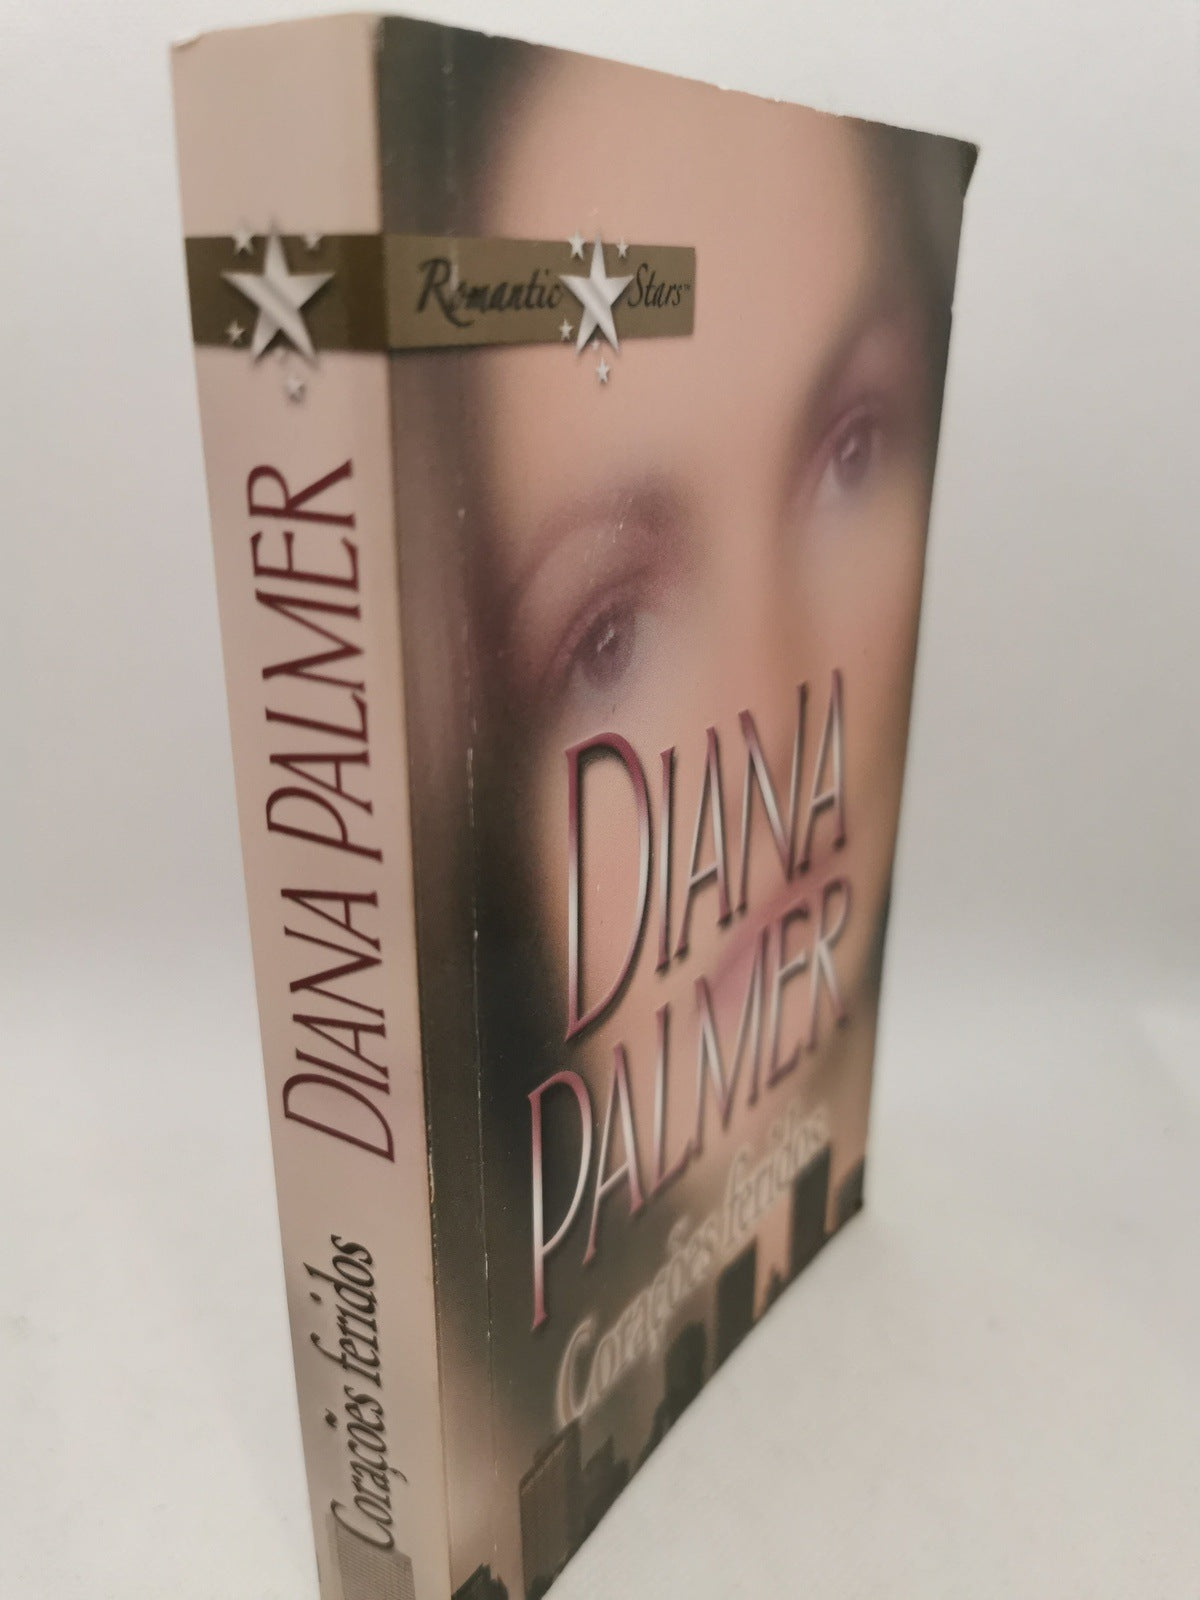 Livro de Bolso Diana Palmer Corações feridos - USADO